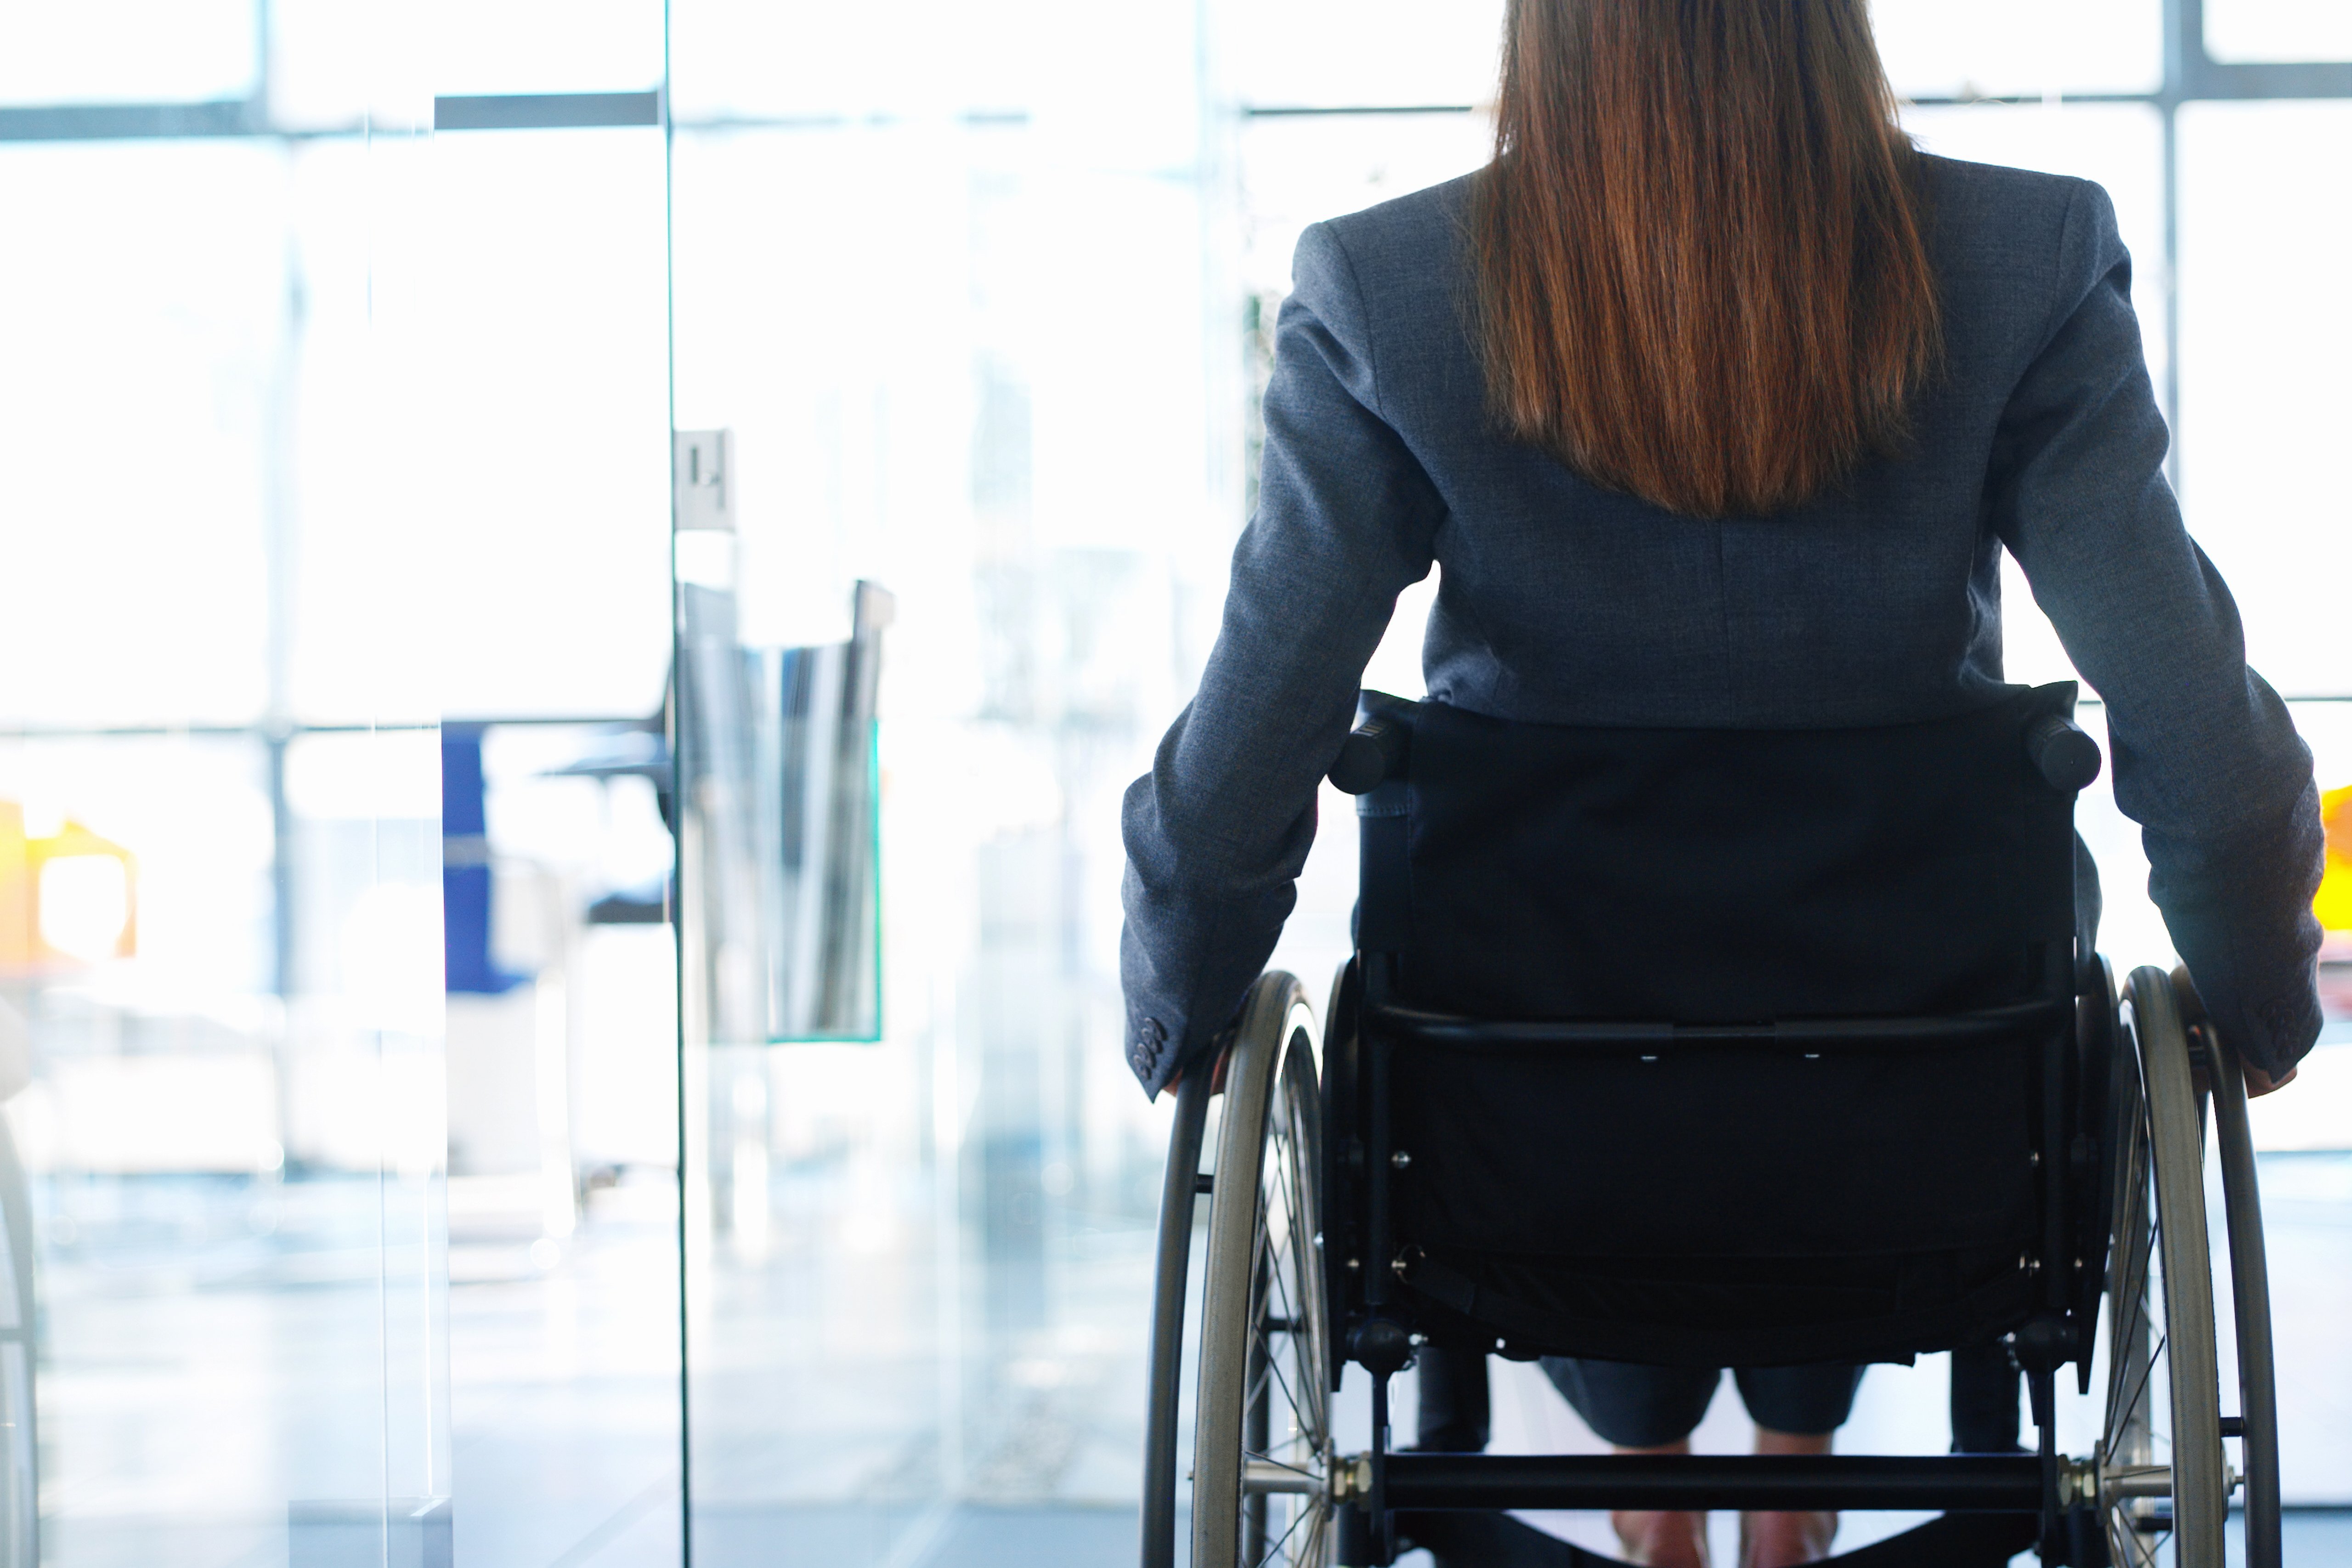 Rückenansicht einer Frau im Rollstuhl, sie befindet sich in einem Bürogebäude